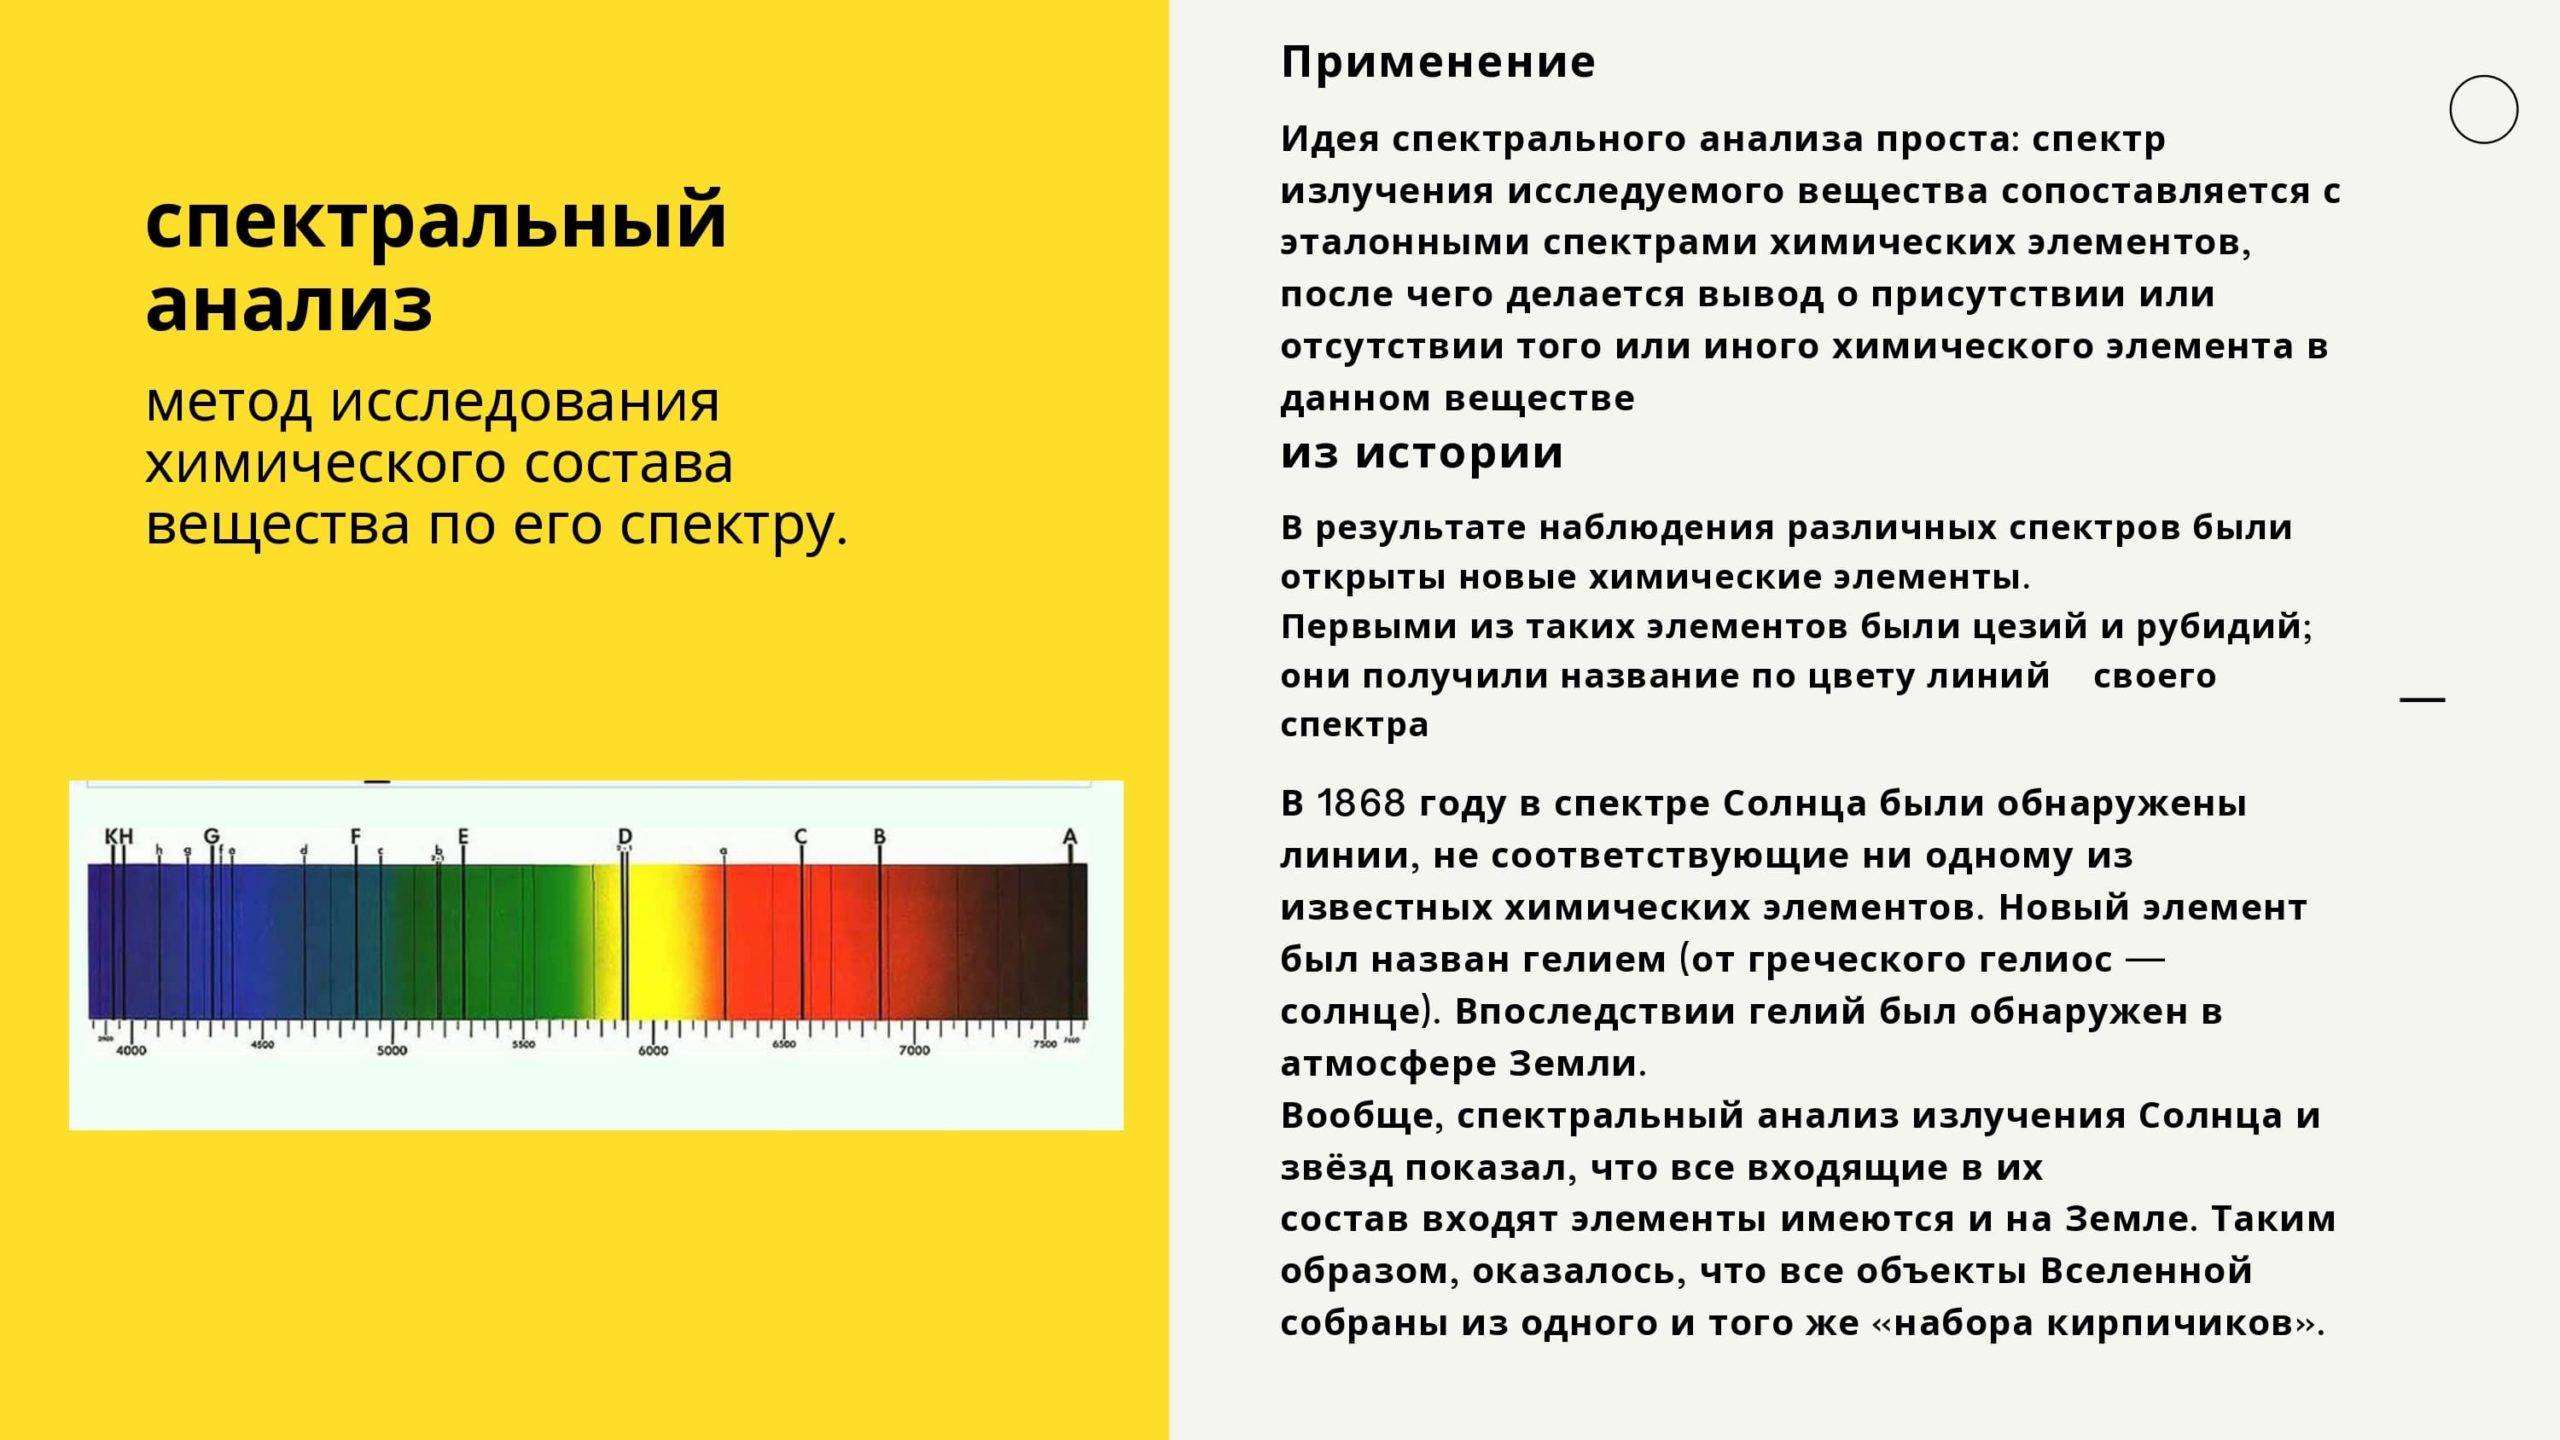 Спектральный анализ воды: какие вещества способен выявить, роль спектрометра в исследовании, где заказать и сколько стоит тест | house-fitness.ru